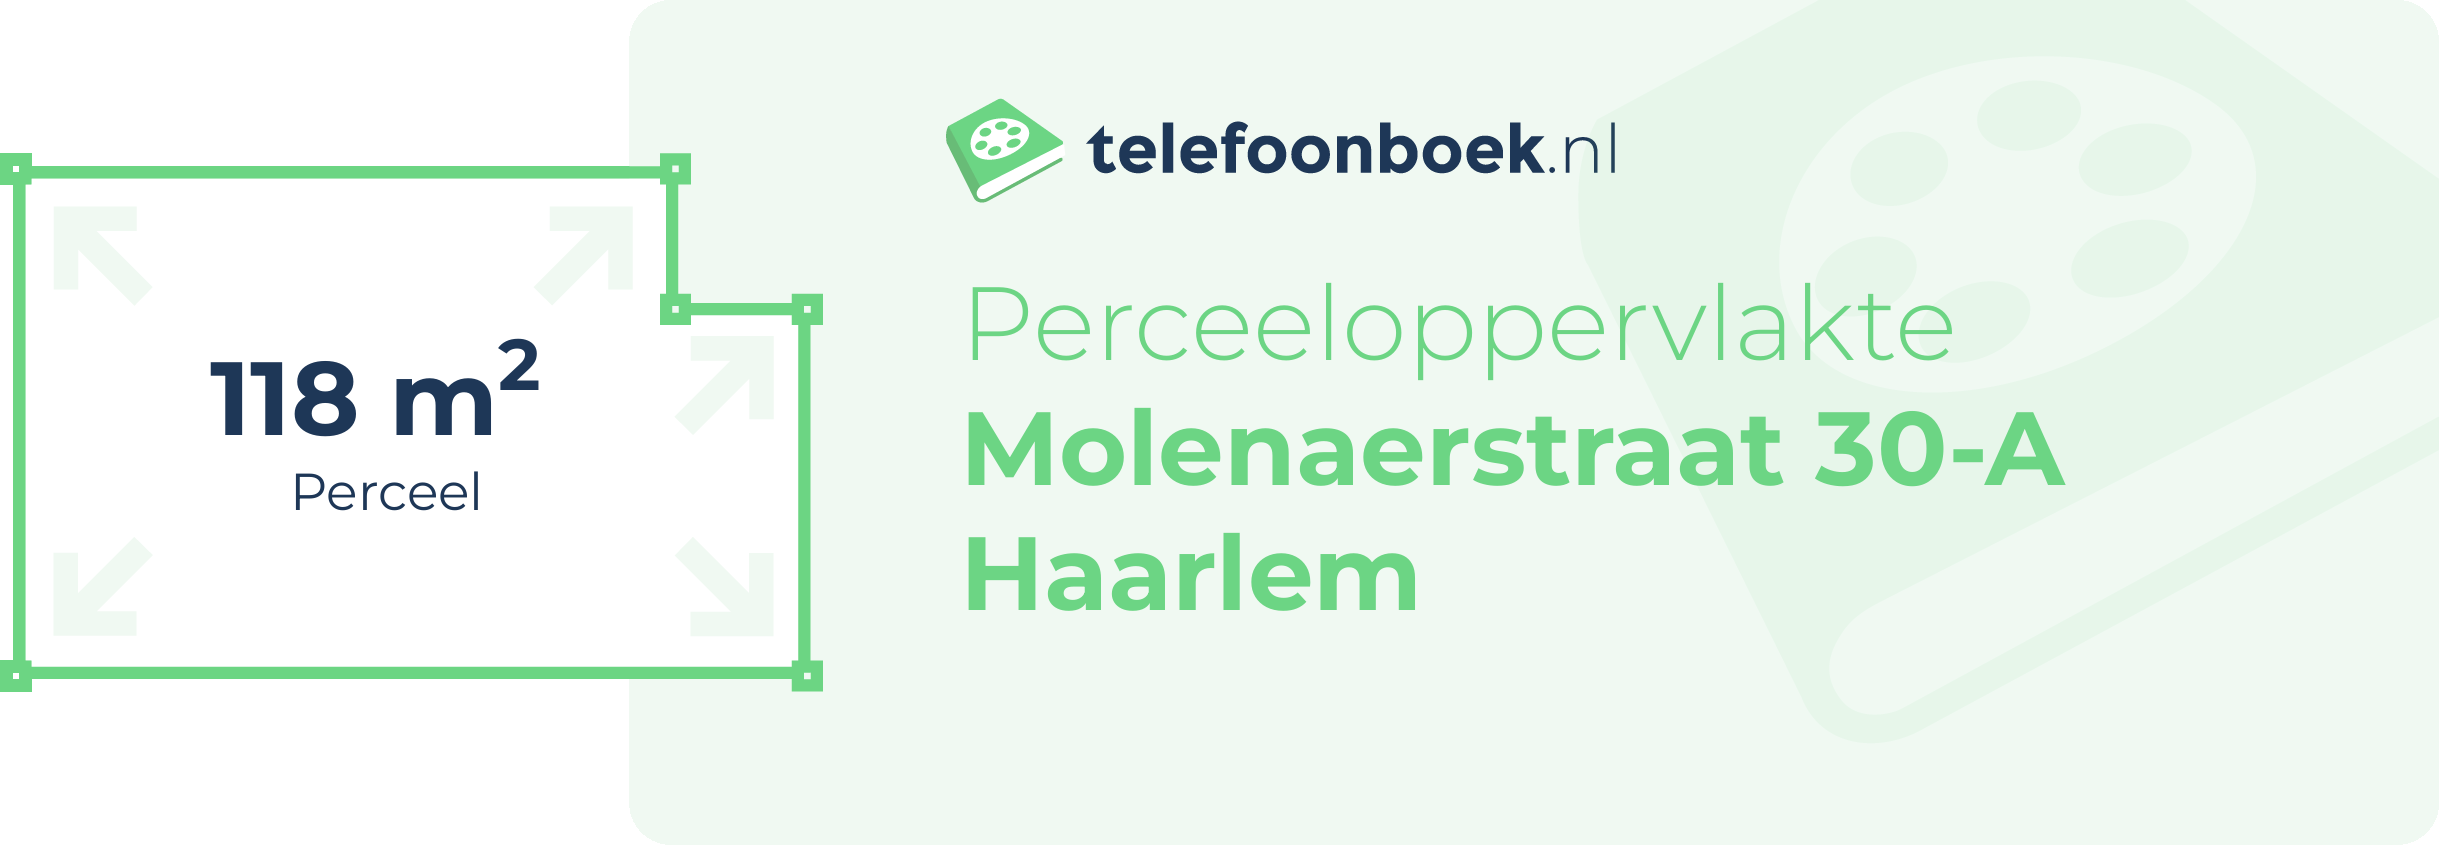 Perceeloppervlakte Molenaerstraat 30-A Haarlem